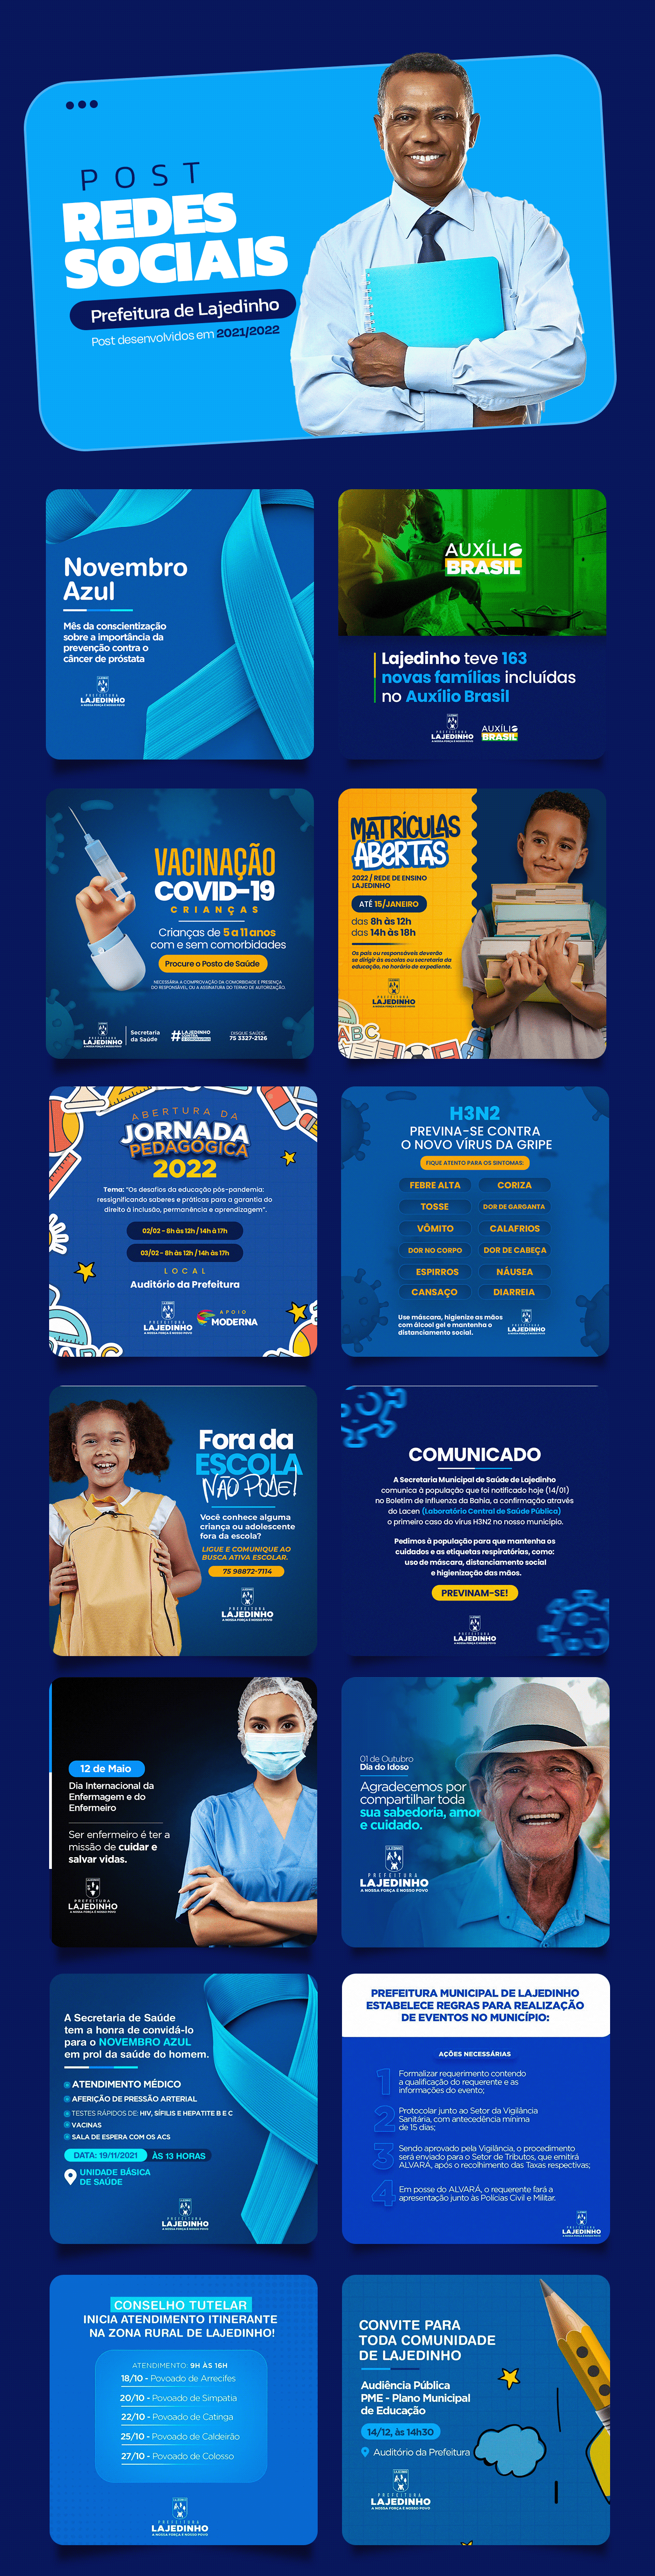 designer gráfico instagram Prefeitura social media Campanha Eleitoral deputado Eleições Politica prefeito Brasil